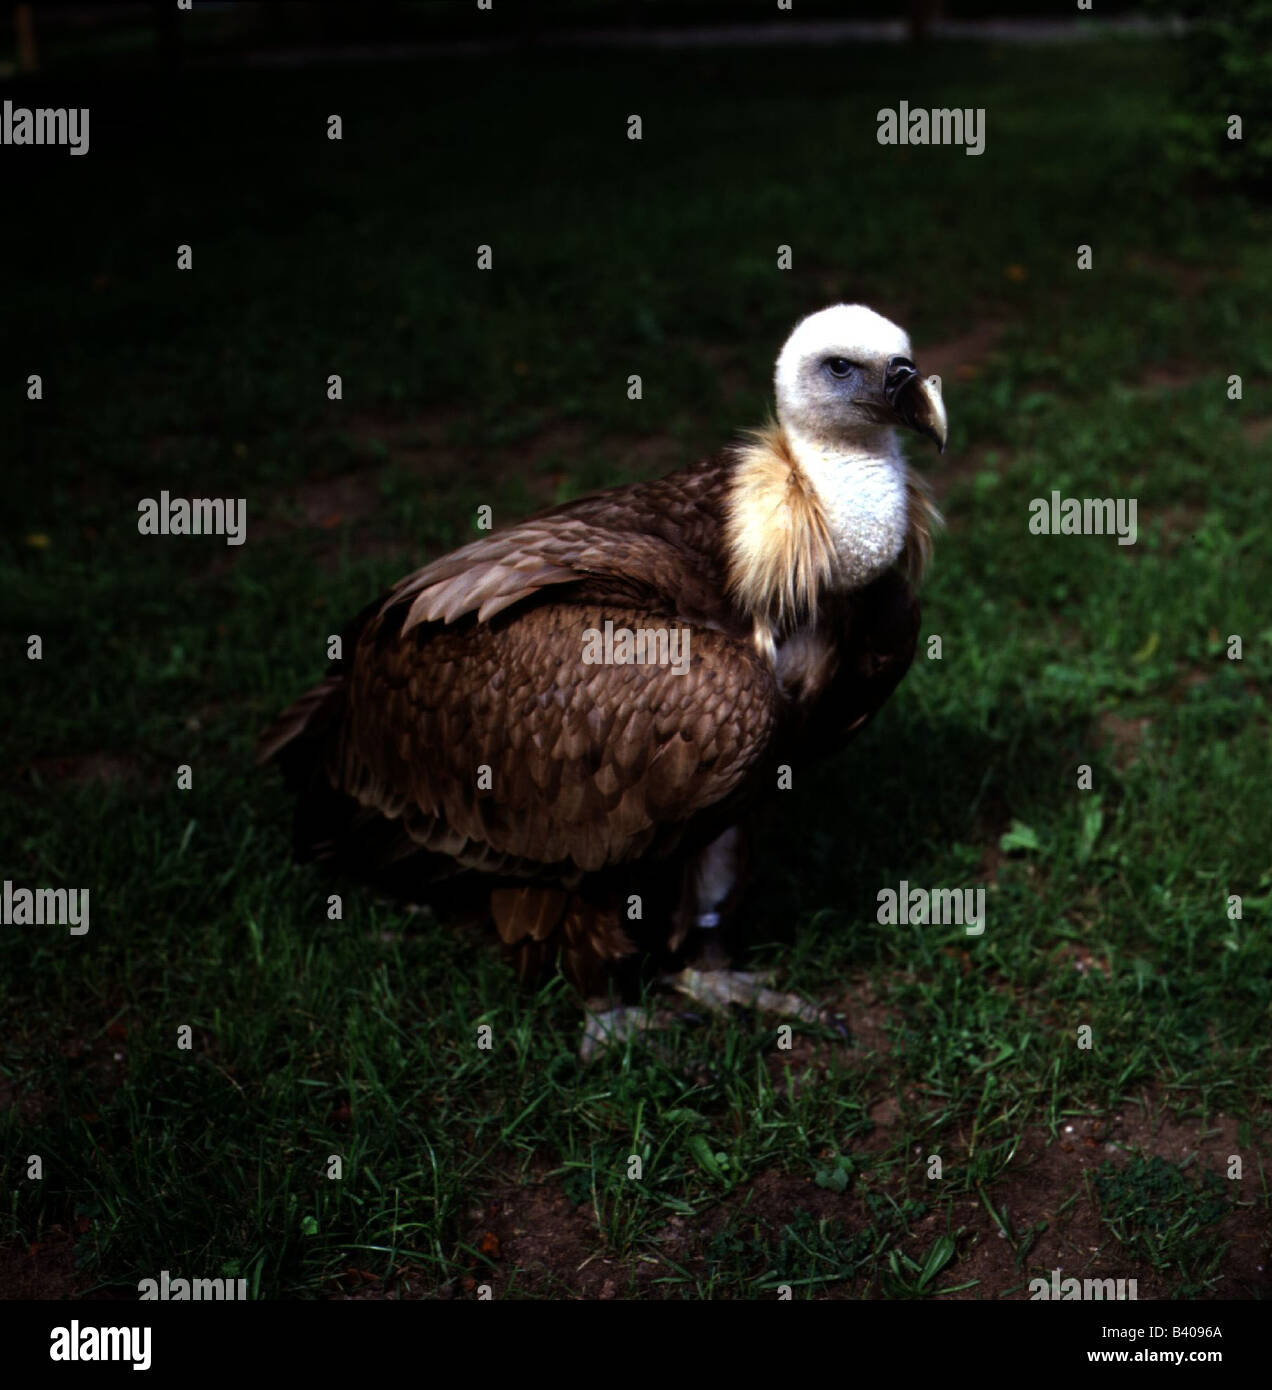 Zoologia / animali, uccelli / uccelli, avvoltoio grifone (Gyps fulvus), cub in piedi in erba, distribuzione: Europa meridionale, settentrionale Foto Stock